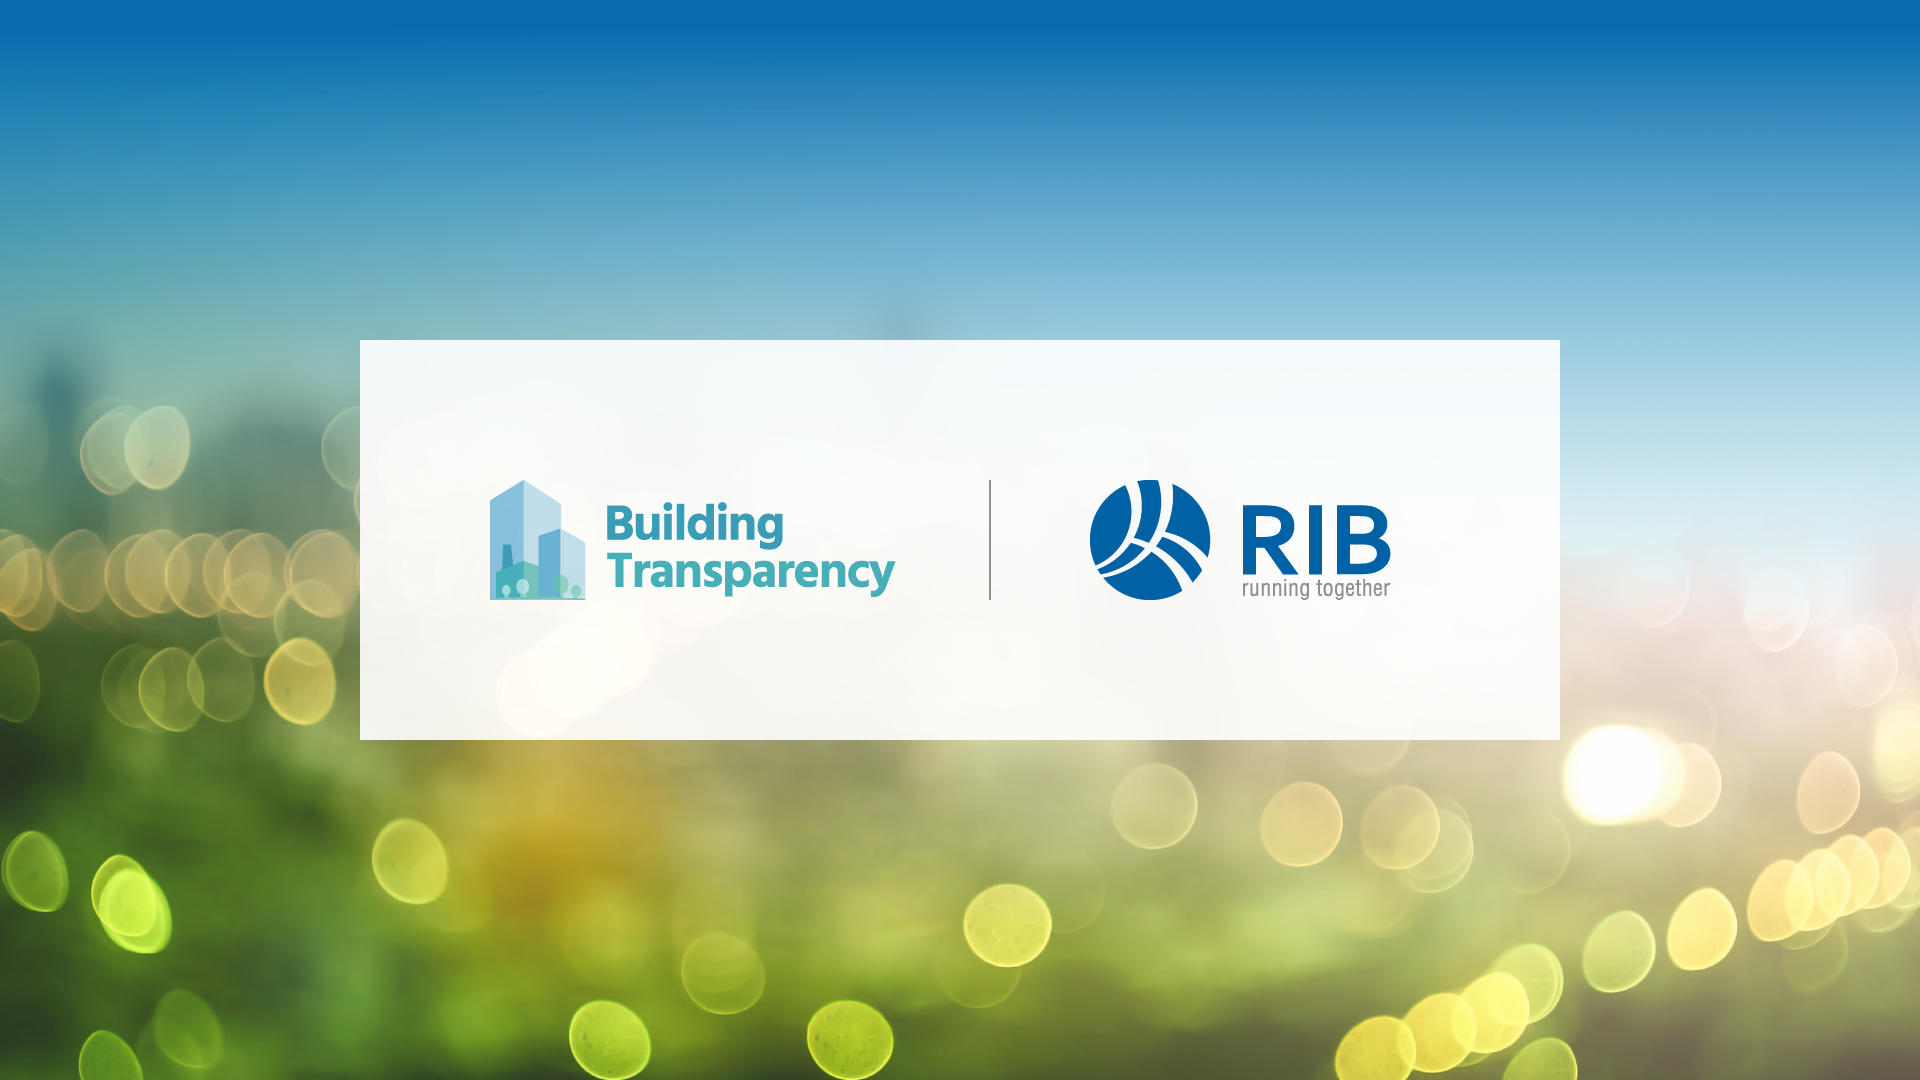 RIB Software satser på teknologi til måling af byggematerialers CO2-udledning for at styrke bæredygtighed i byggebranchen